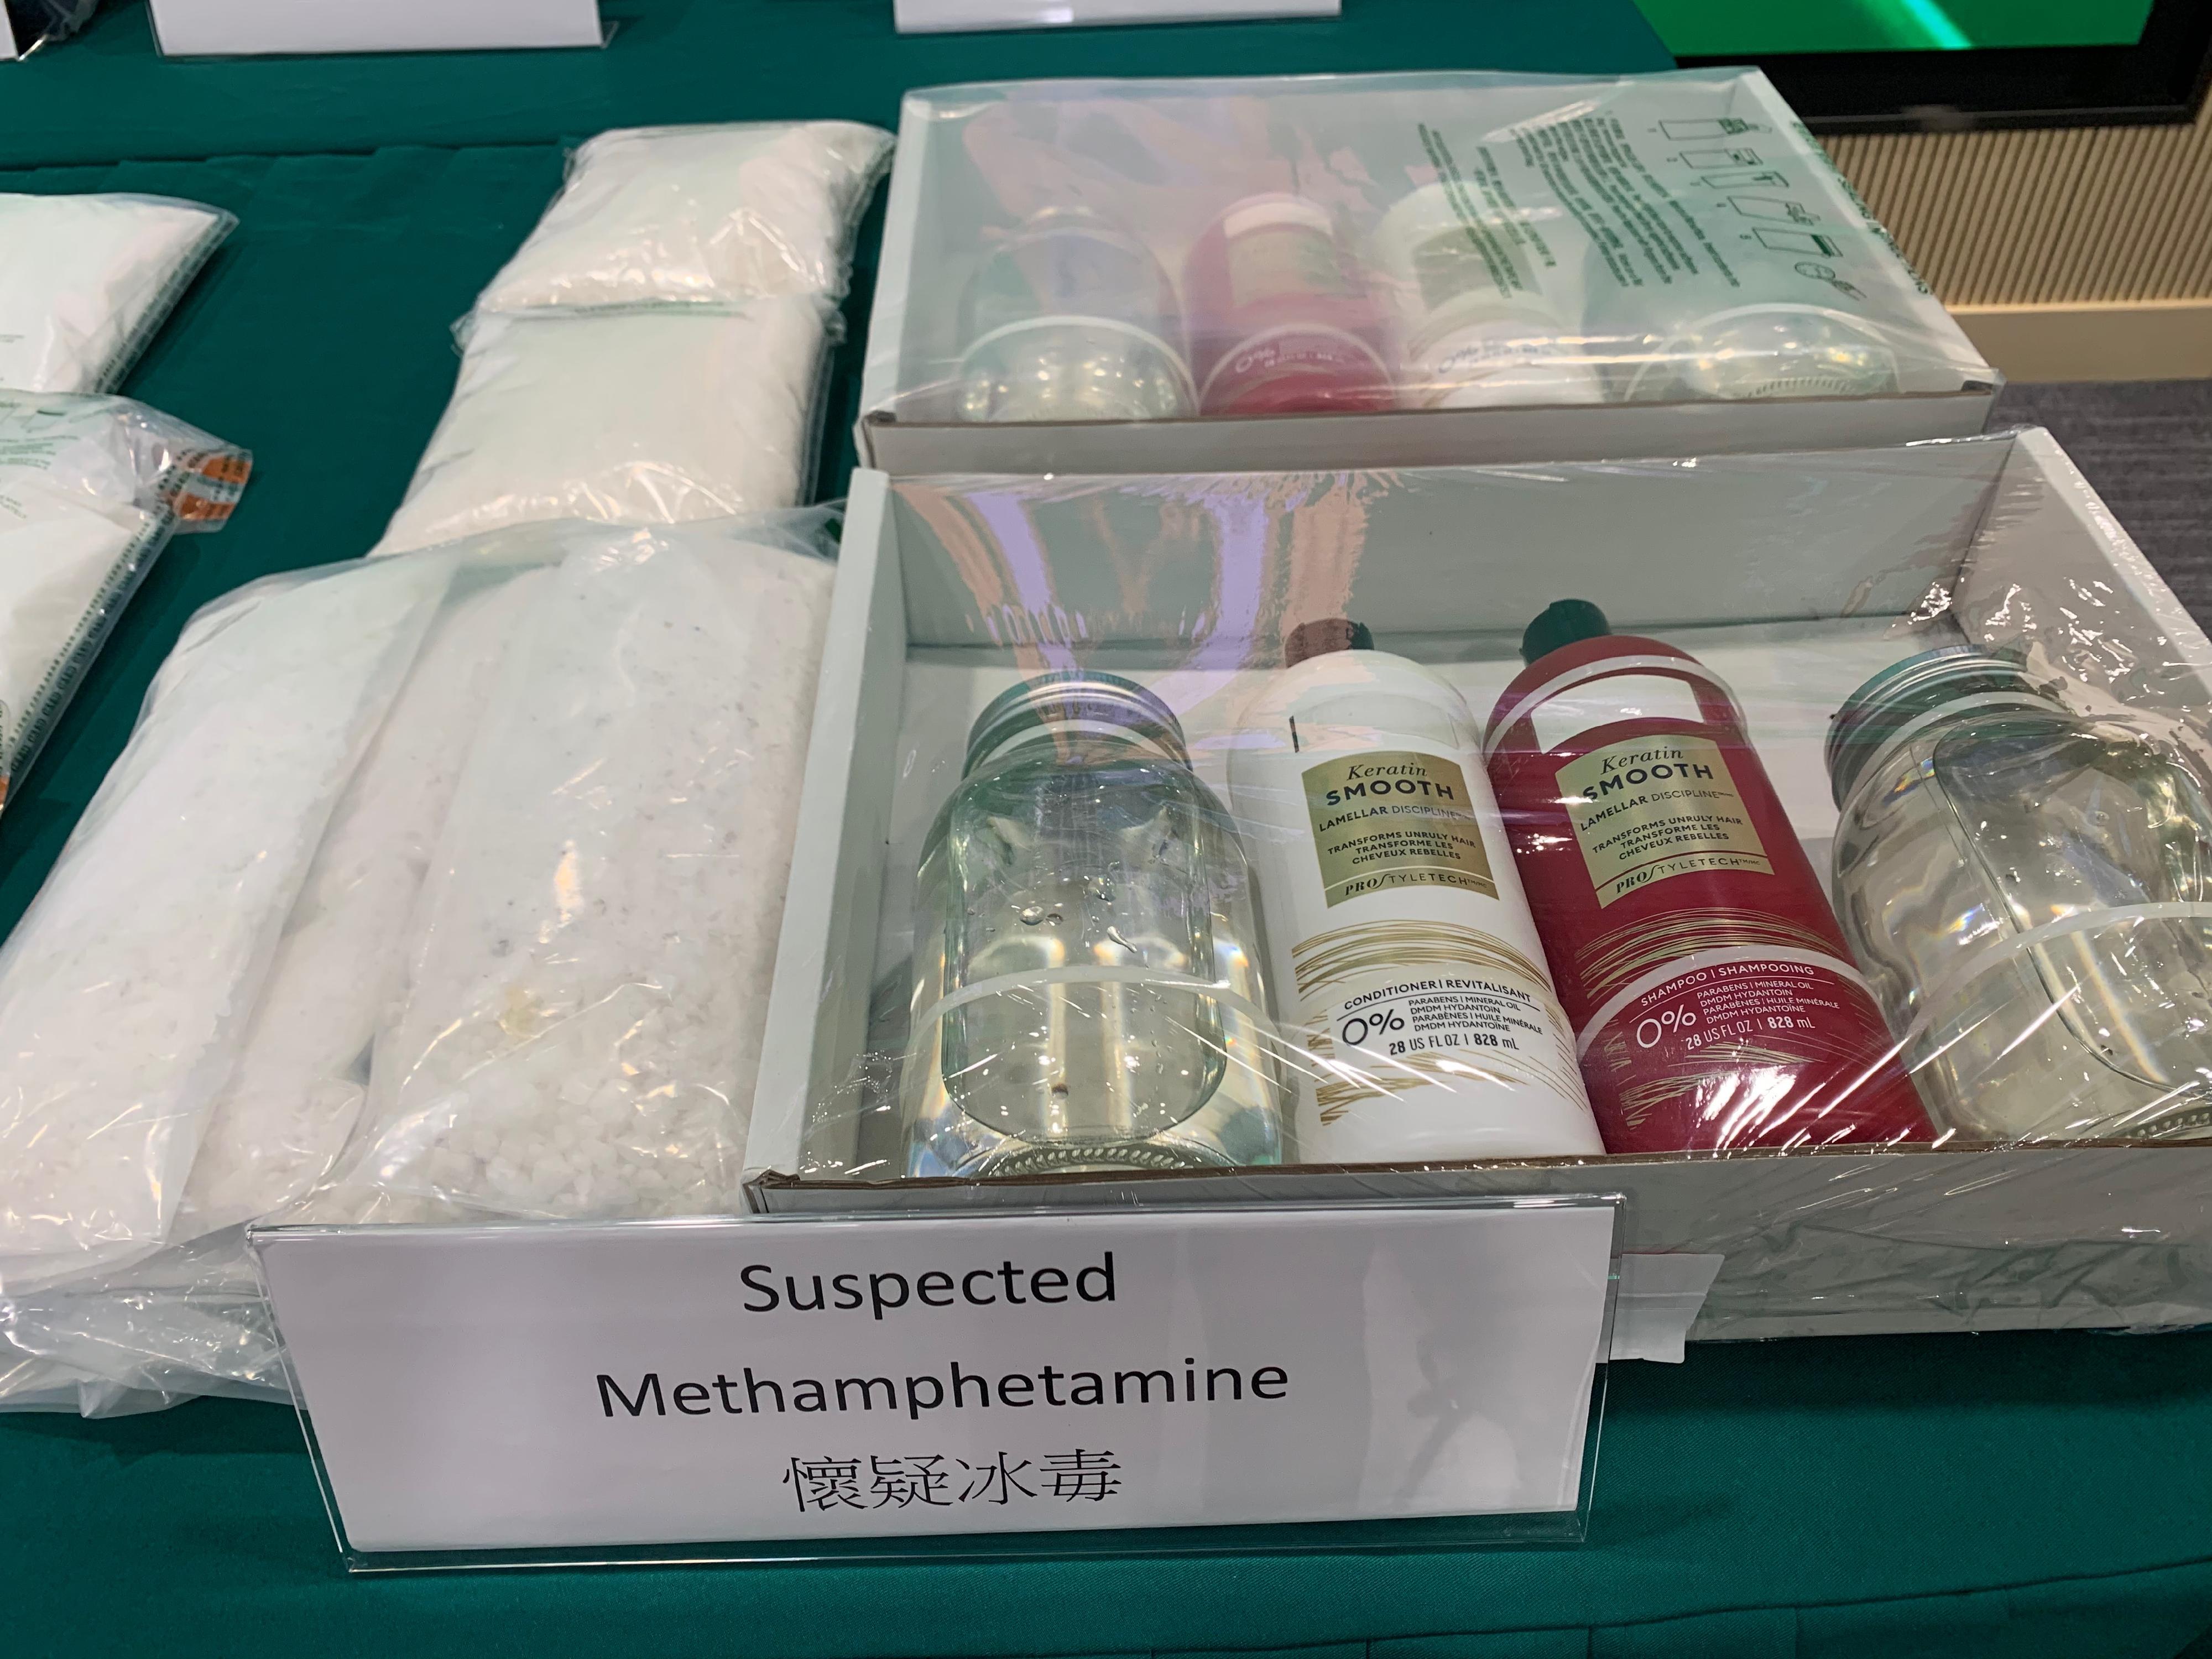 香港海關於六月十二日至八月十一日採取代號「狙擊者」的反毒品行動，打擊利用集運方式販運毒品。圖示行動中檢獲的部分懷疑冰毒。